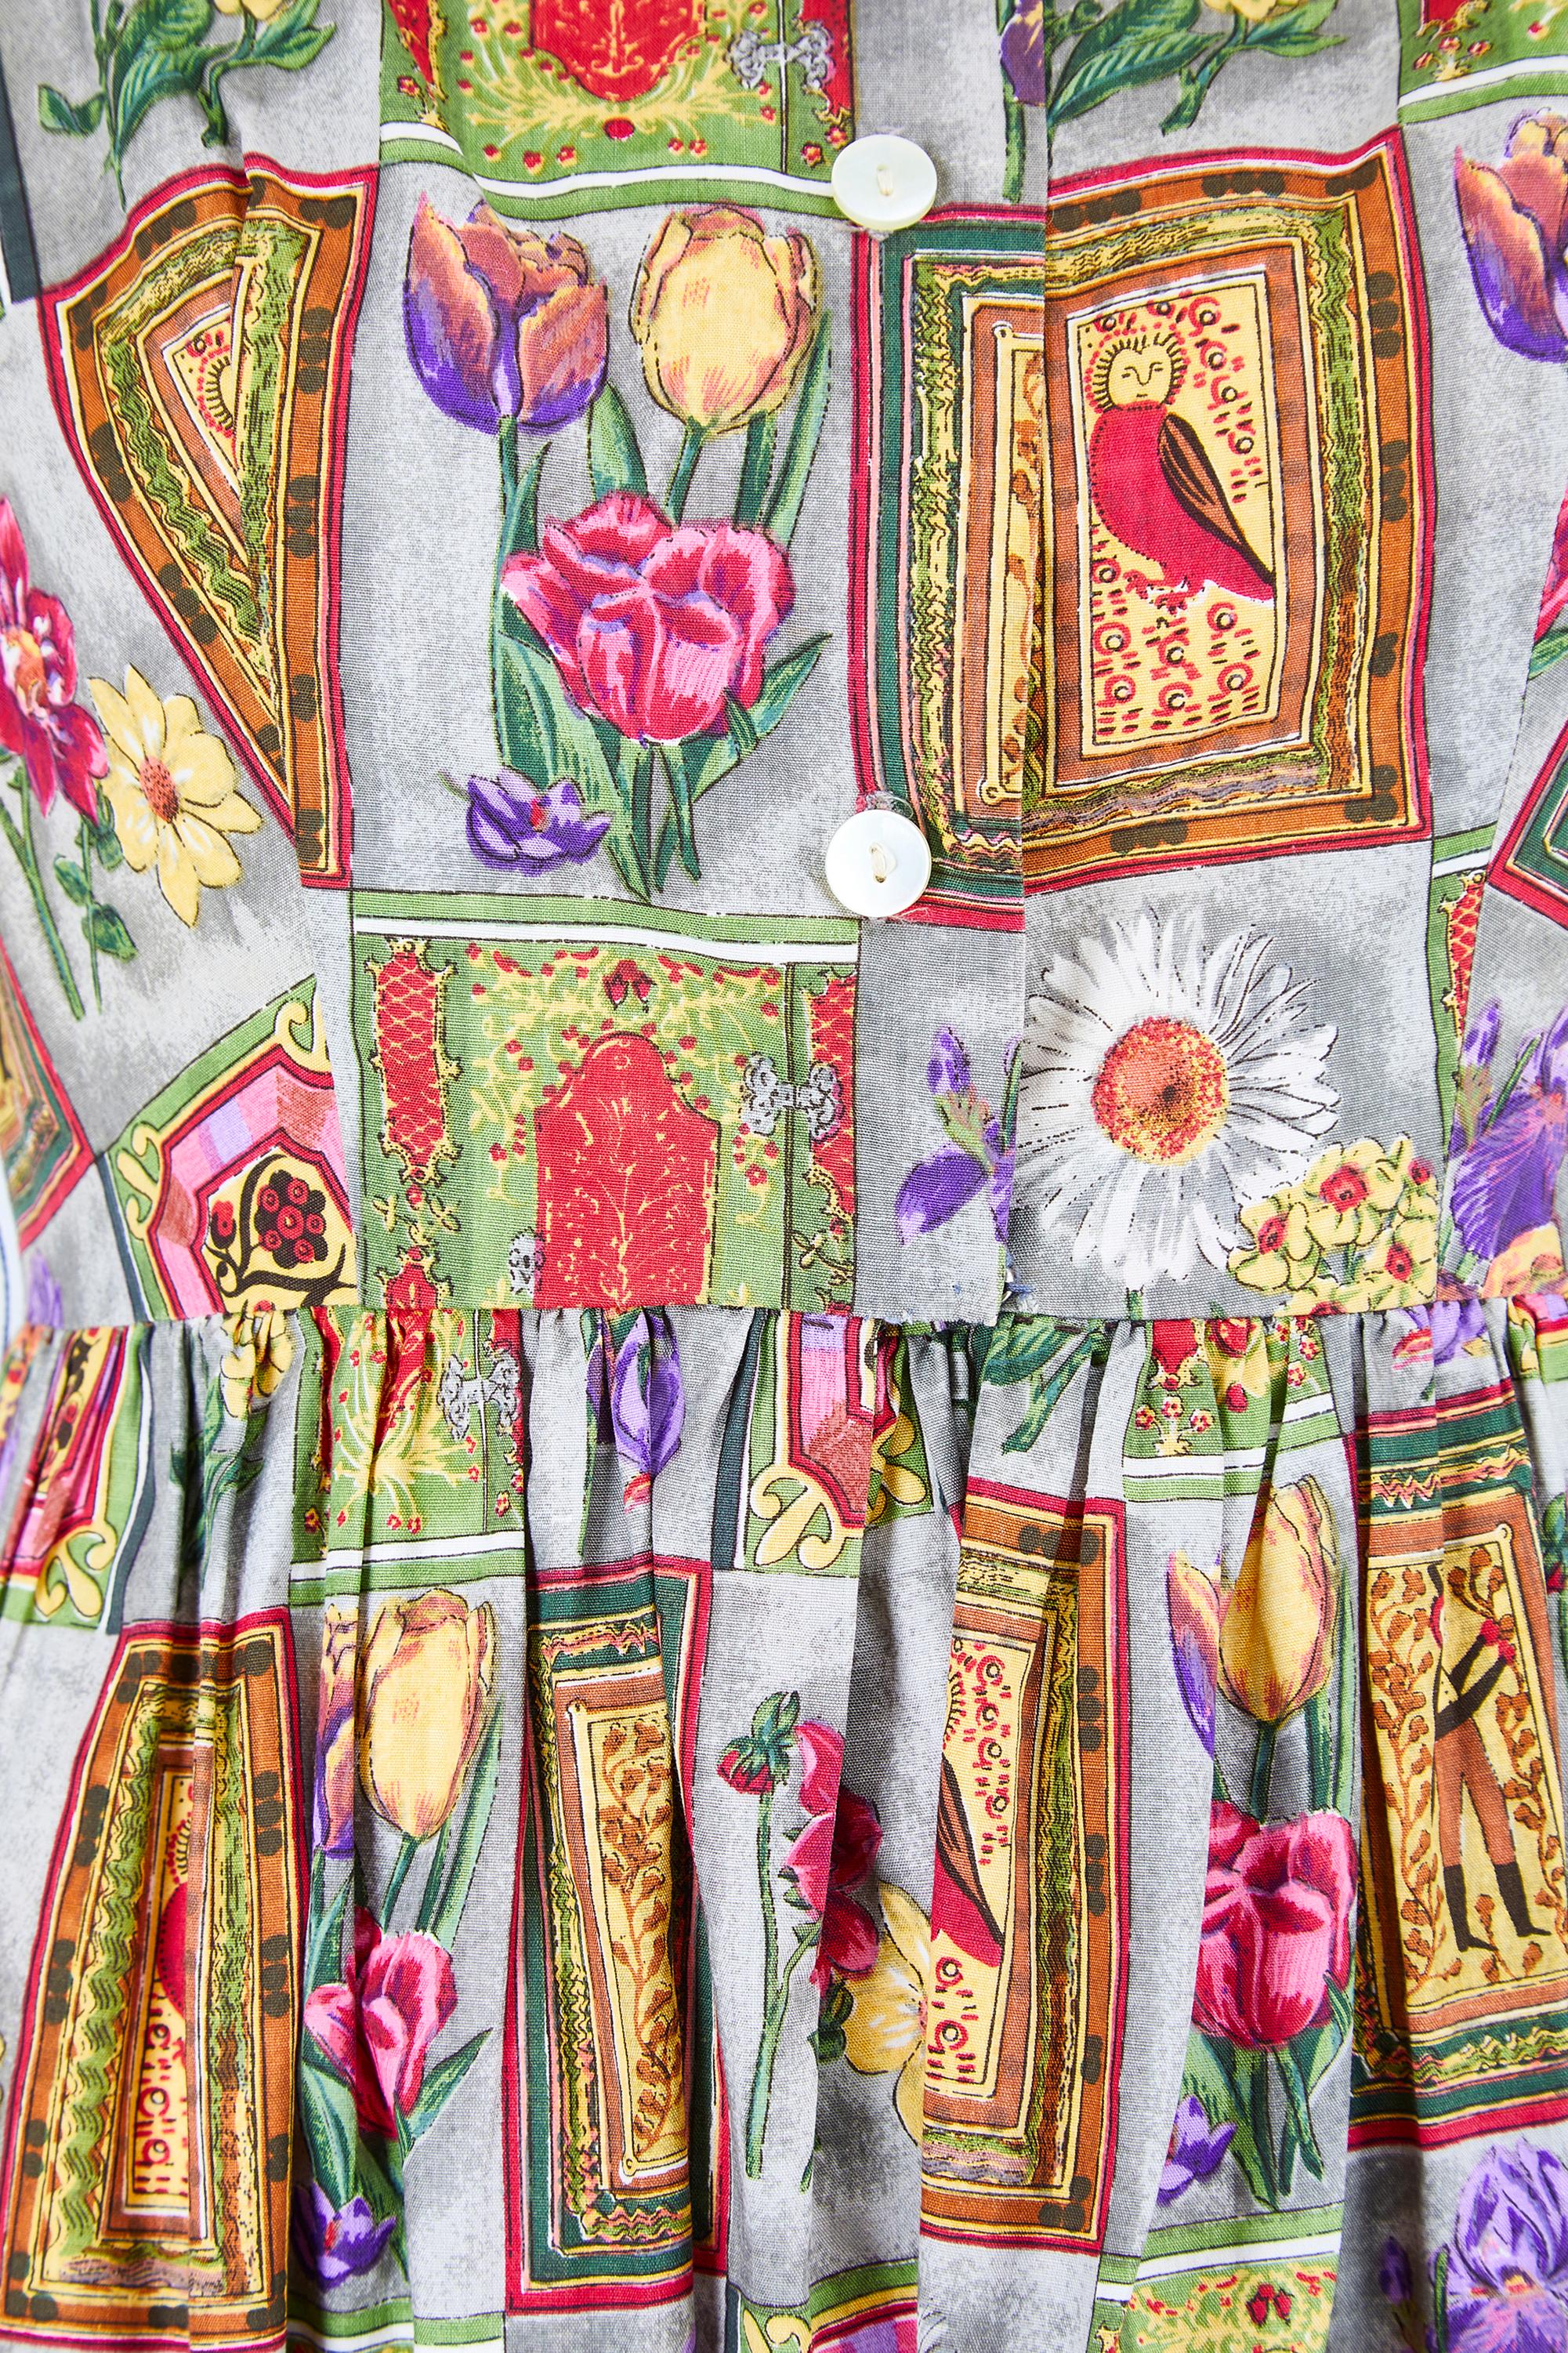 Dieses lebhafte Baumwollkleid wurde in den 1960er Jahren von Parikene entworfen und wahrscheinlich in Frankreich hergestellt. Es zeigt einen verspielten, neuartigen Druck von Volkskunst in kunstvollen Rahmen und englischen Landgartenblüten. Die